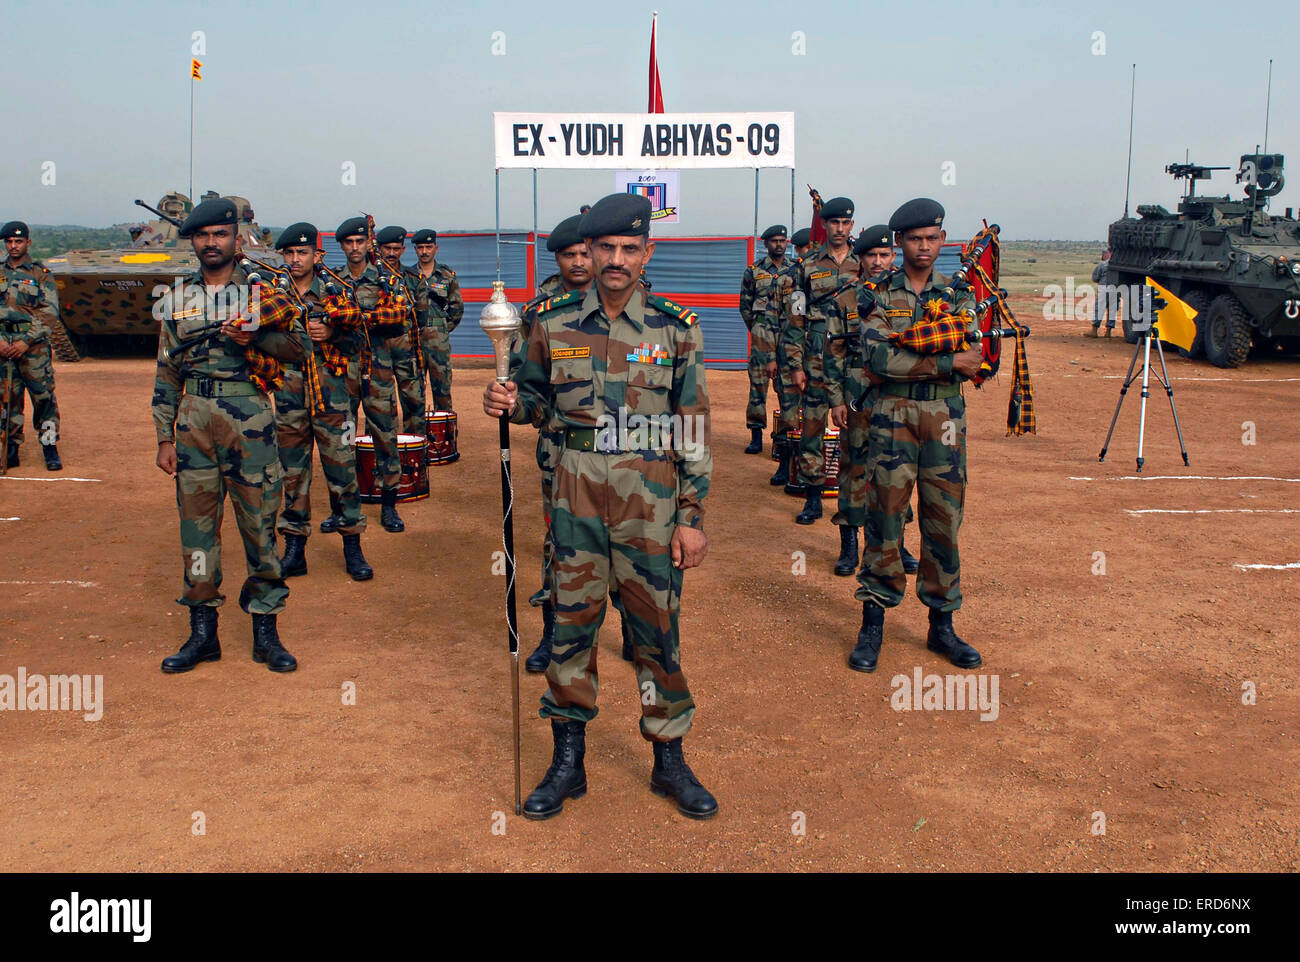 Les soldats de l'armée indienne à partir de la 94e Brigade blindée en formation permanente au cours de la cérémonie d'ouverture de l'exercice Yudh Abhyas 12 octobre 2009 en Inde, Babina. Banque D'Images